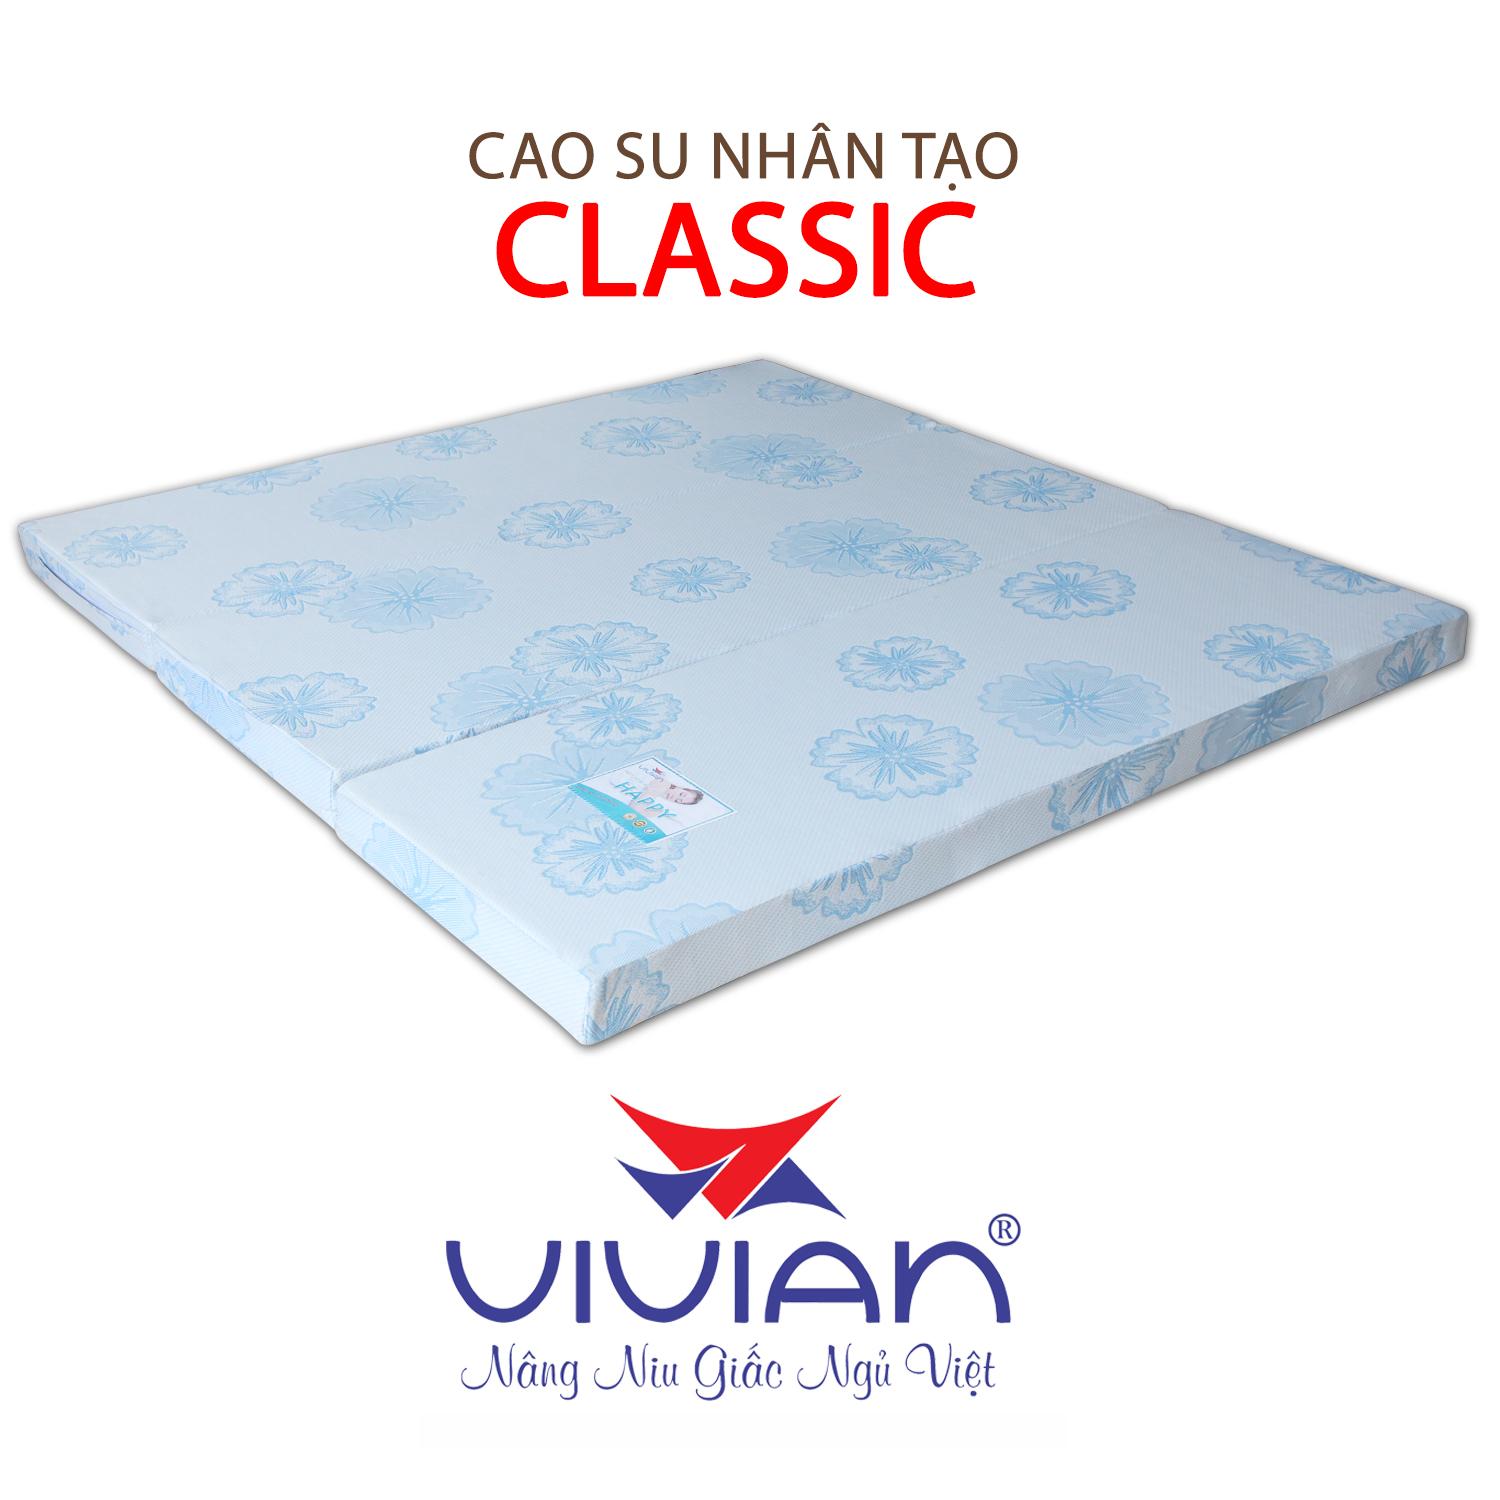 NỆM CAO SU NHÂN TẠO CLASSIC GẤP 3 VIVIAN 100X200X10